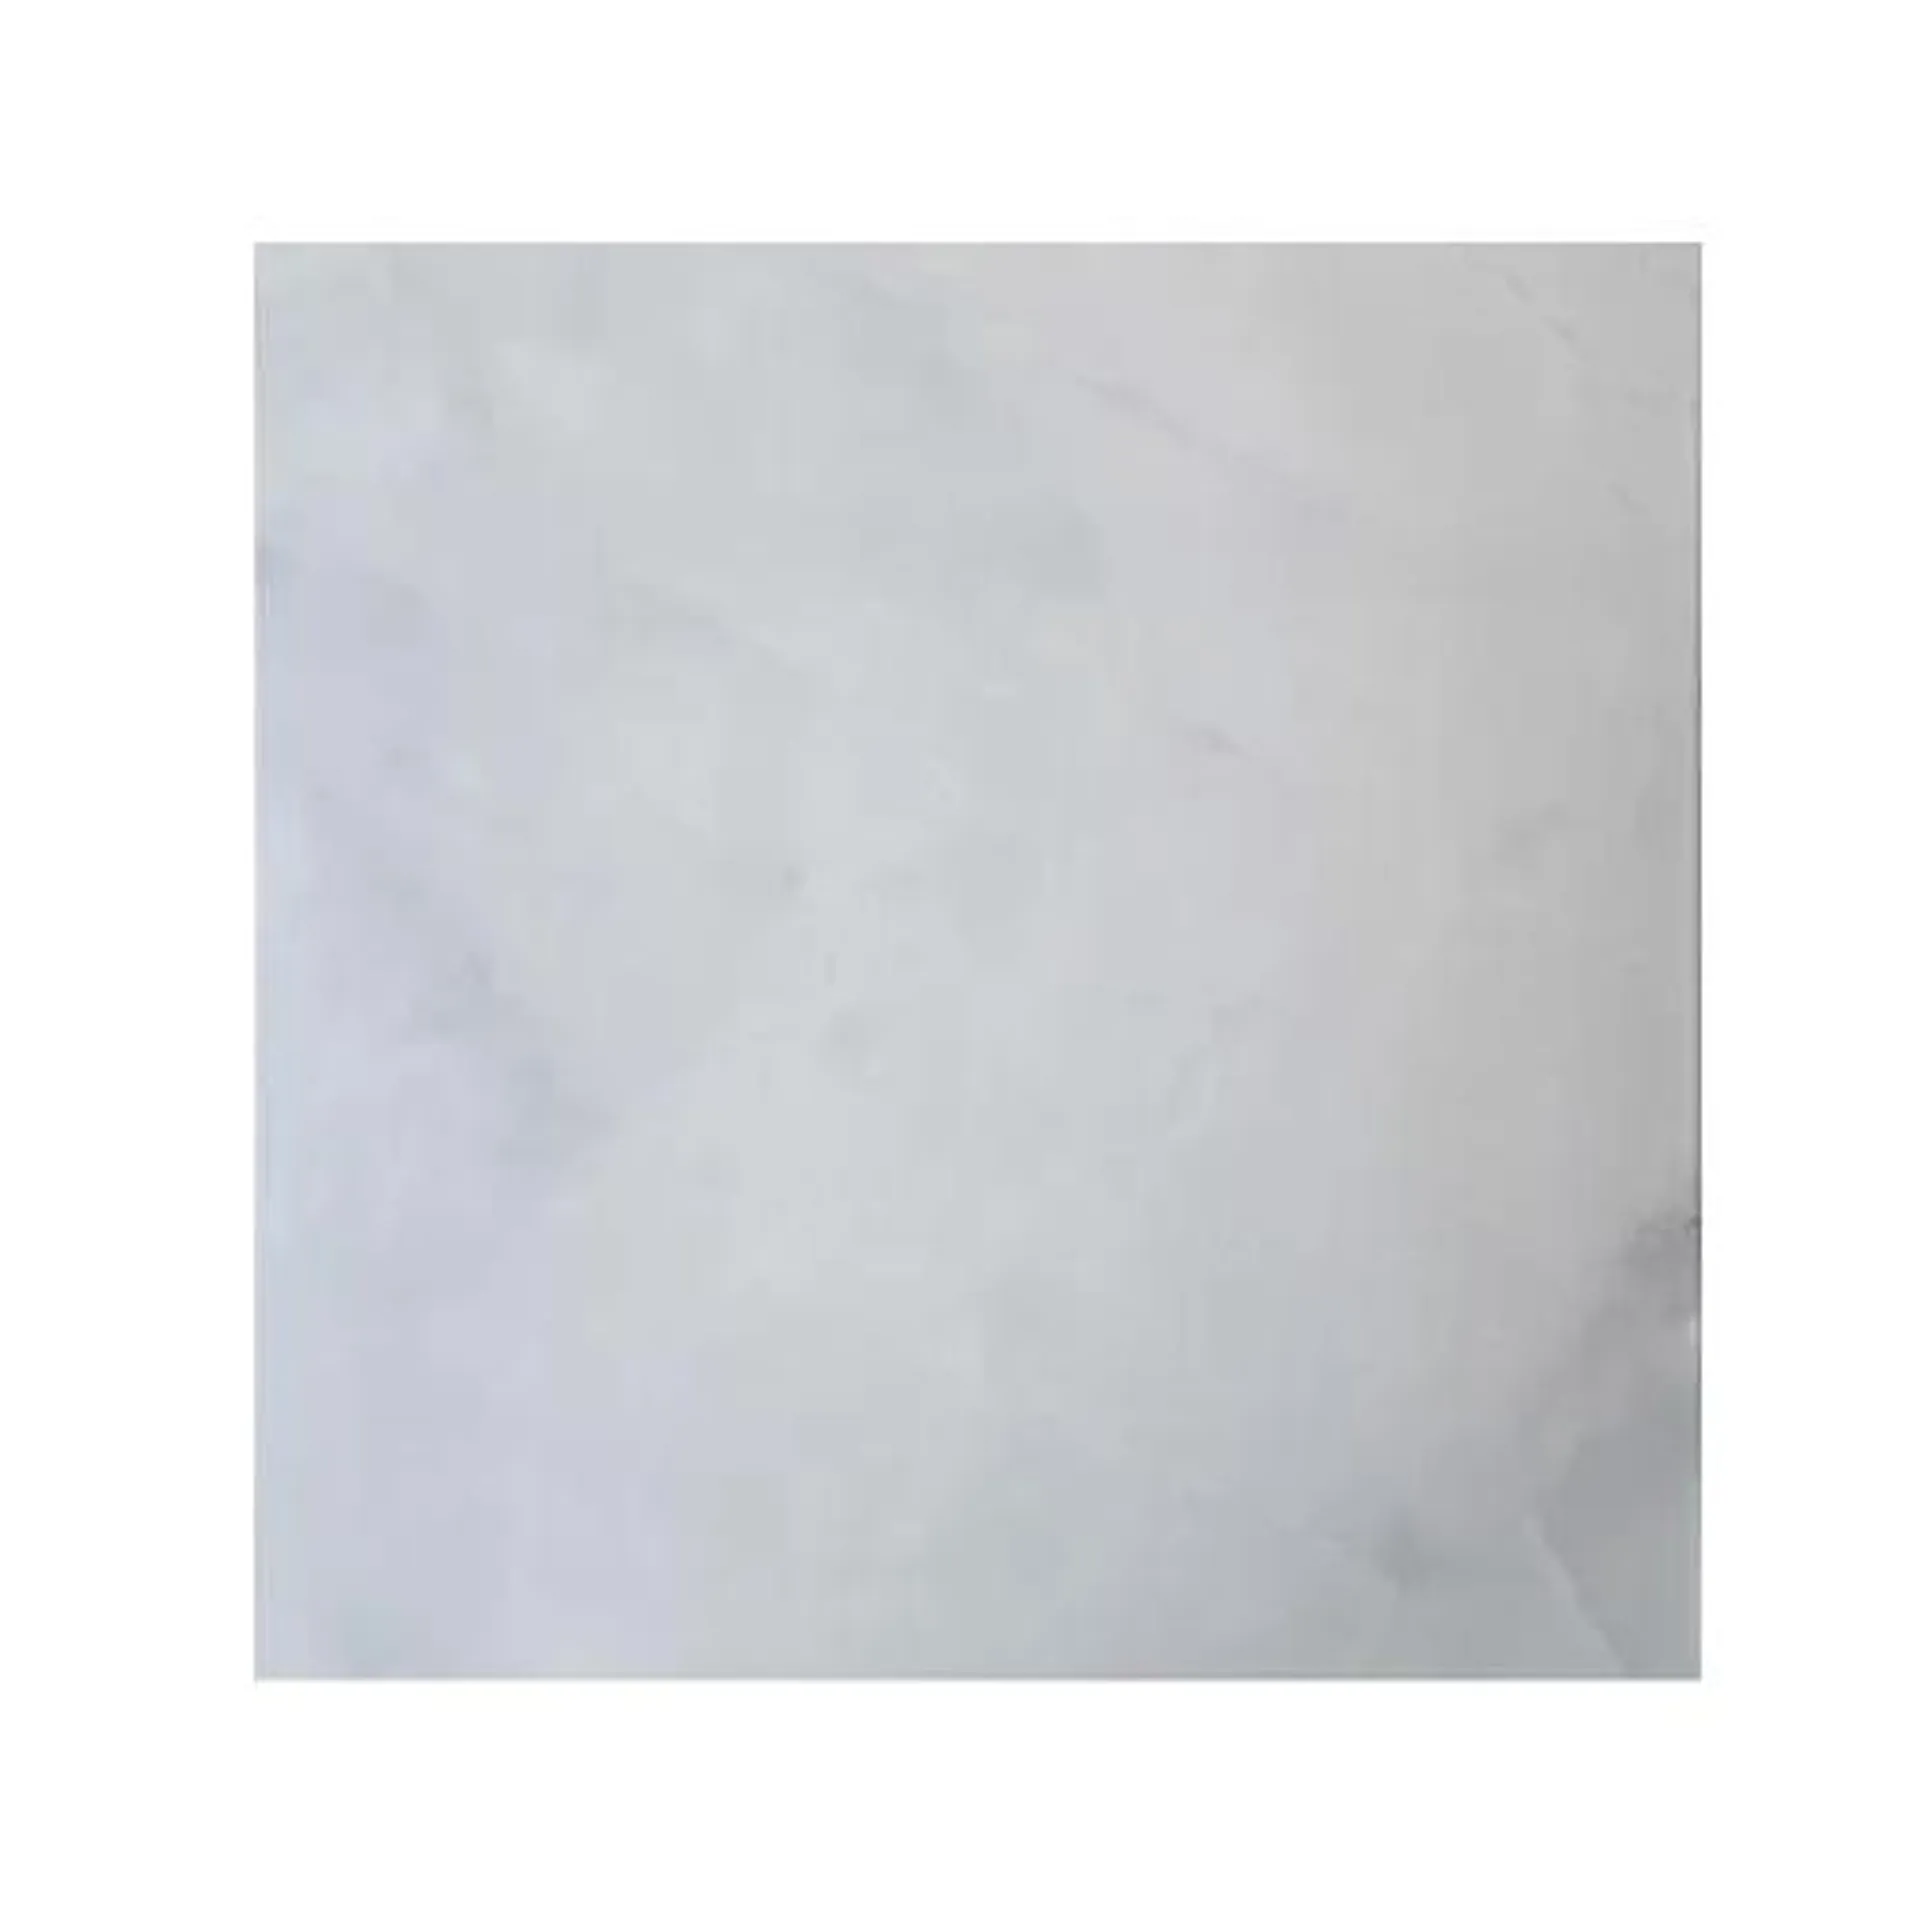 Piso ceramico tipo marmol arietta blanco 60x60 cm